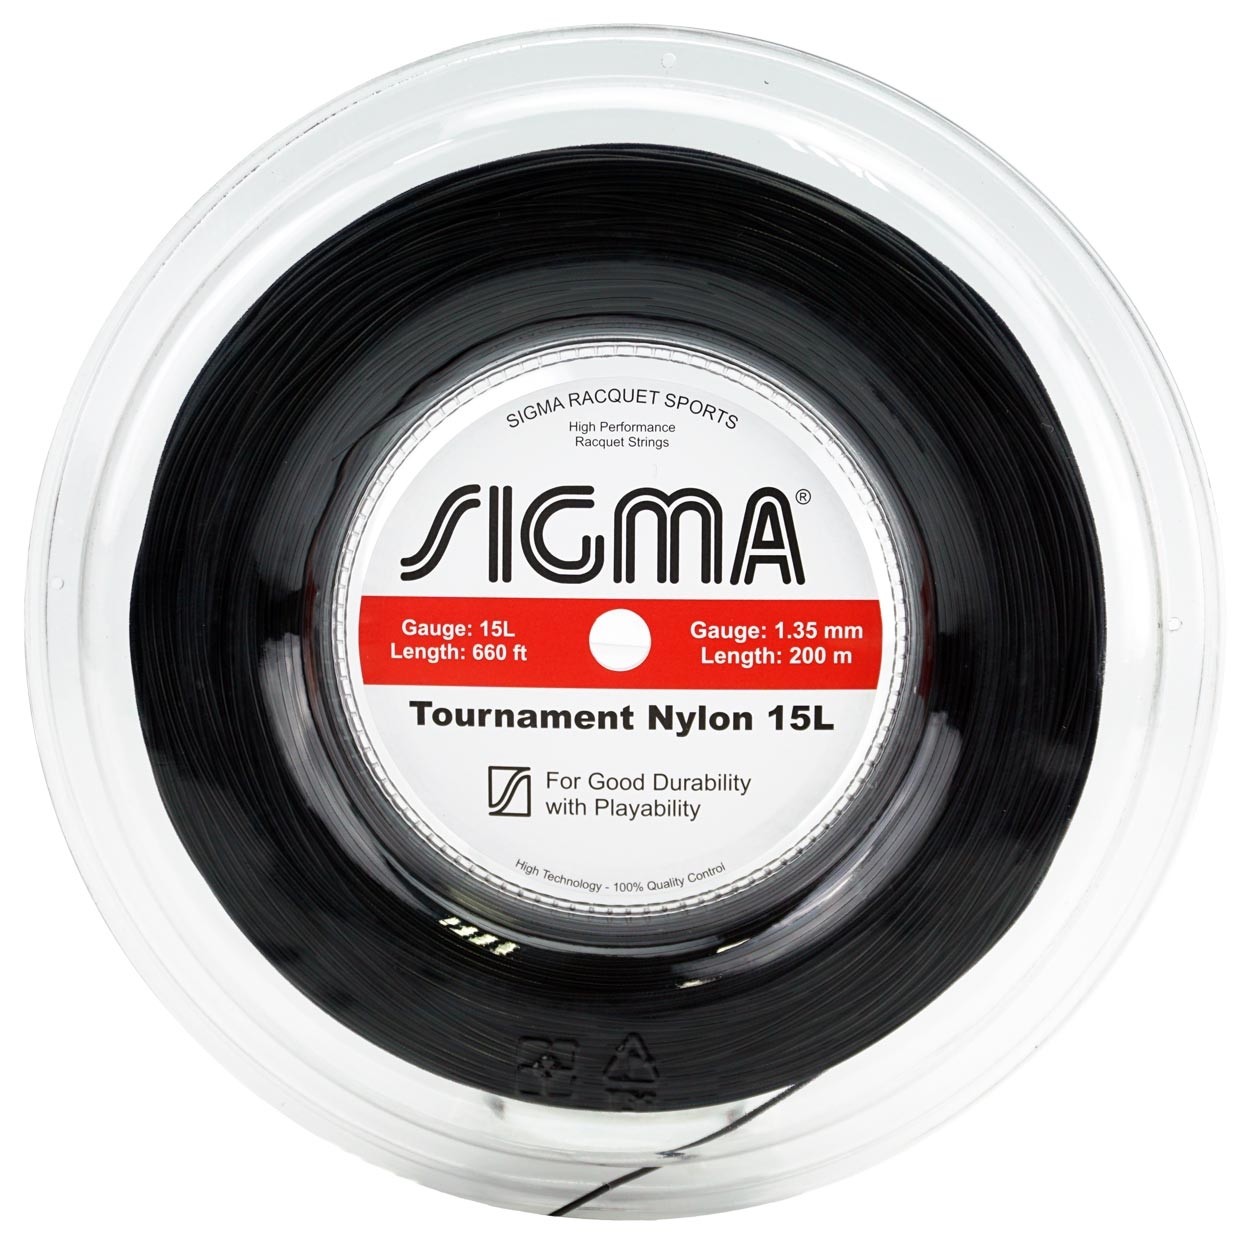 Corda Sigma Tournament Nylon 15L 1.35mm Rolo 200m Preta